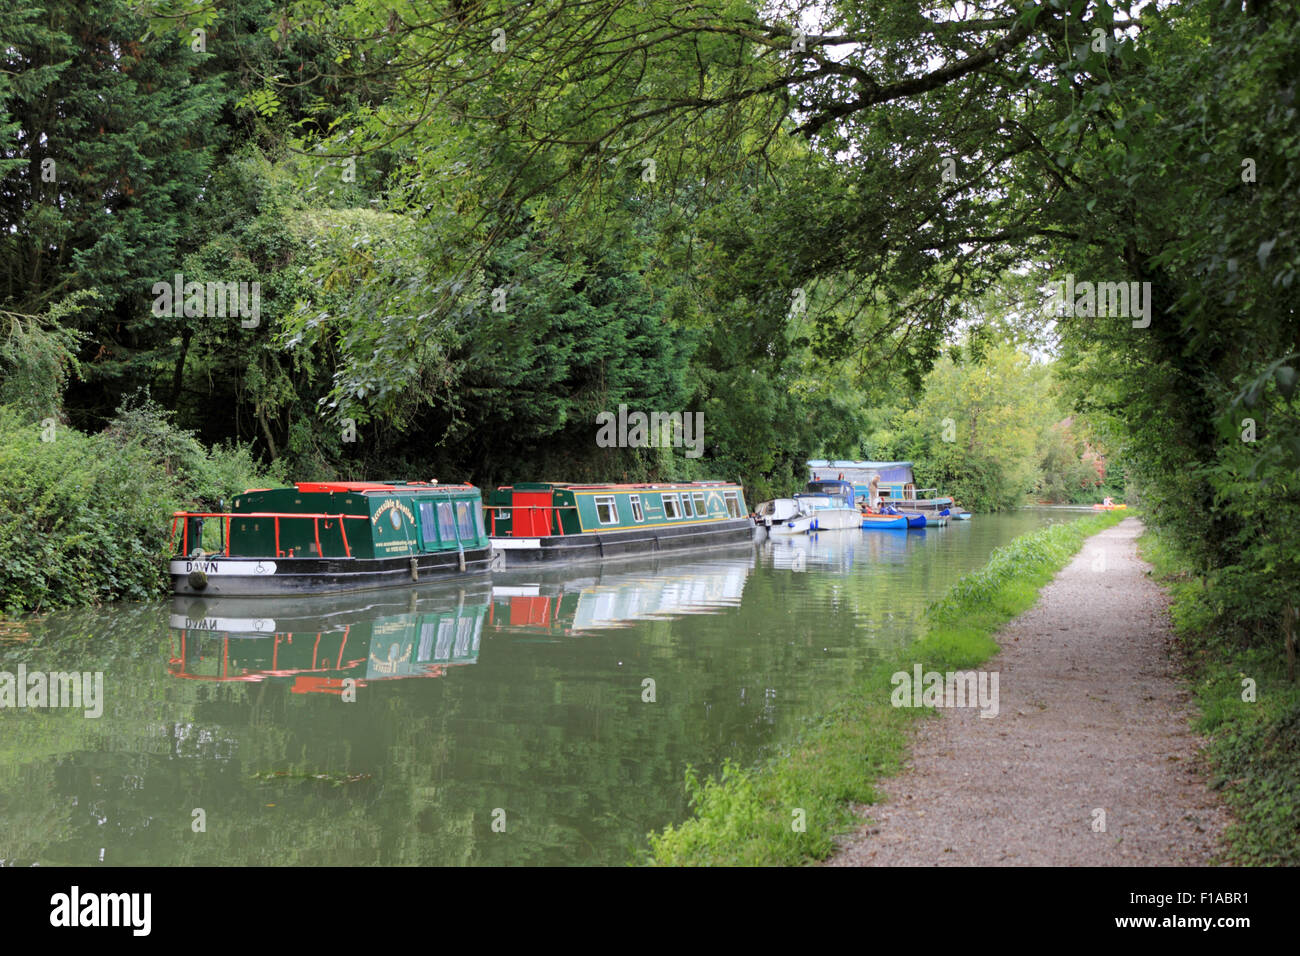 The Basingstoke Canal, England UK Stock Photo